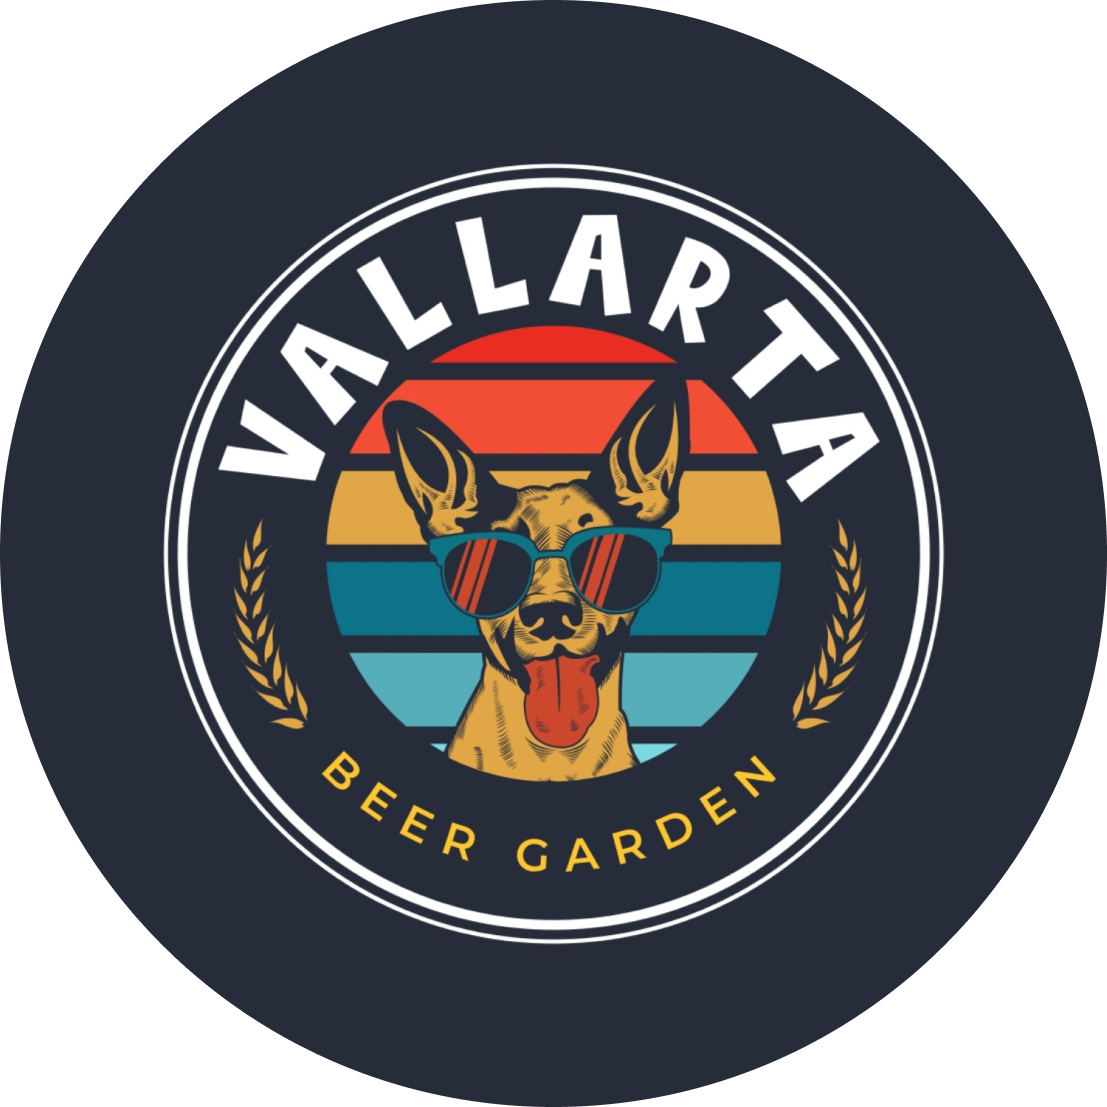 Vallarta Beer Garden